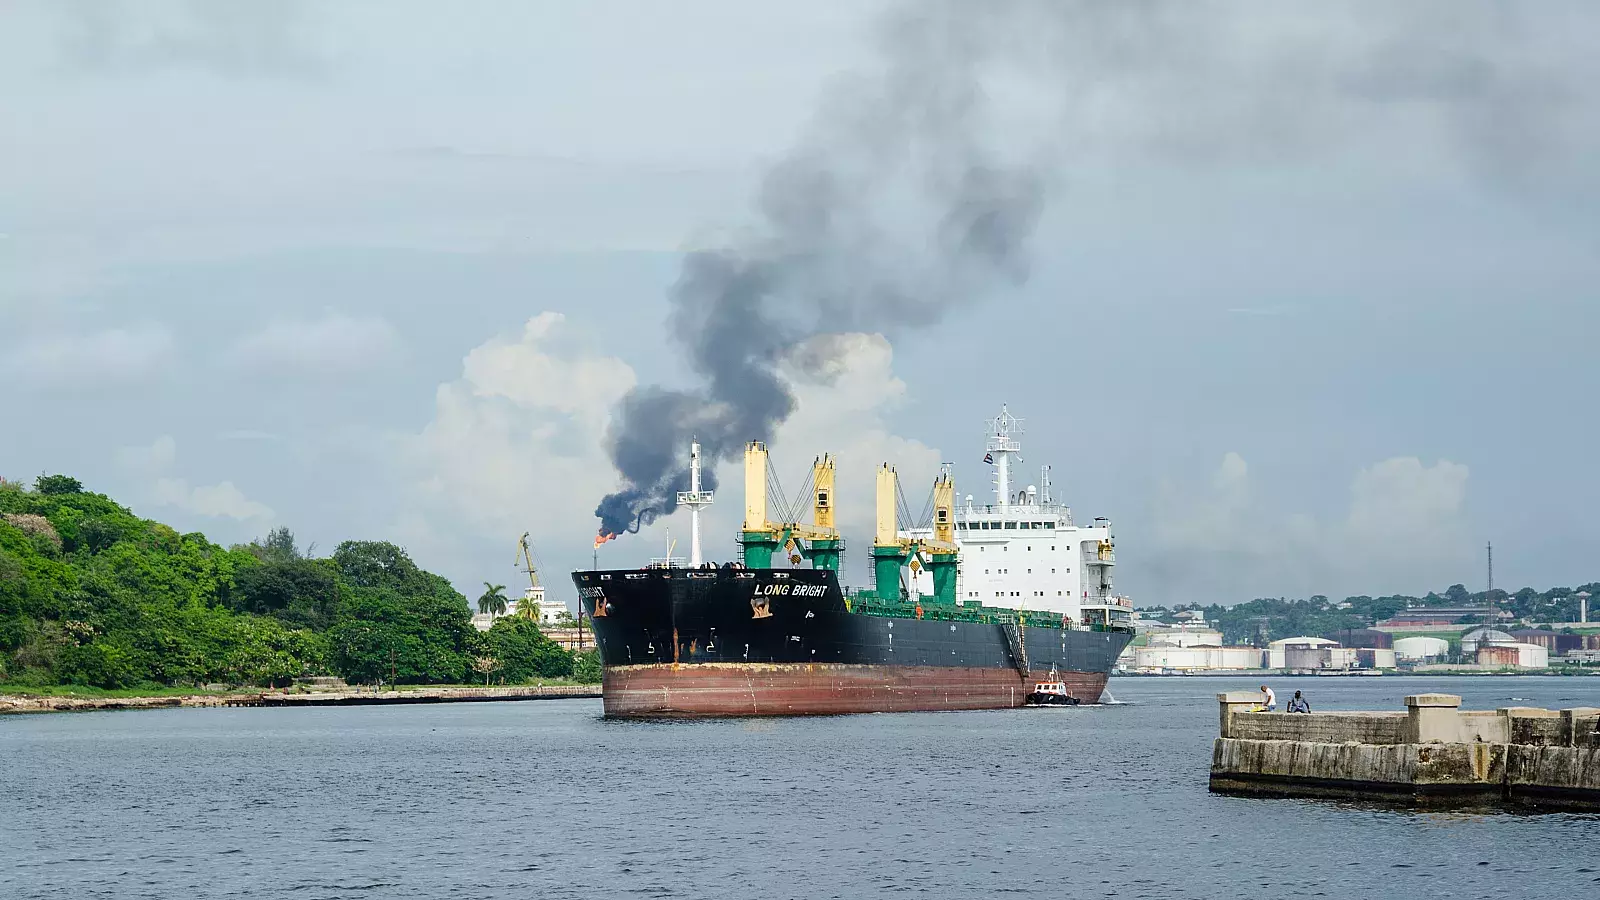 Venezuela usa una “flota oscura” y señales de ubicación falsas para enviar petróleo a Cuba